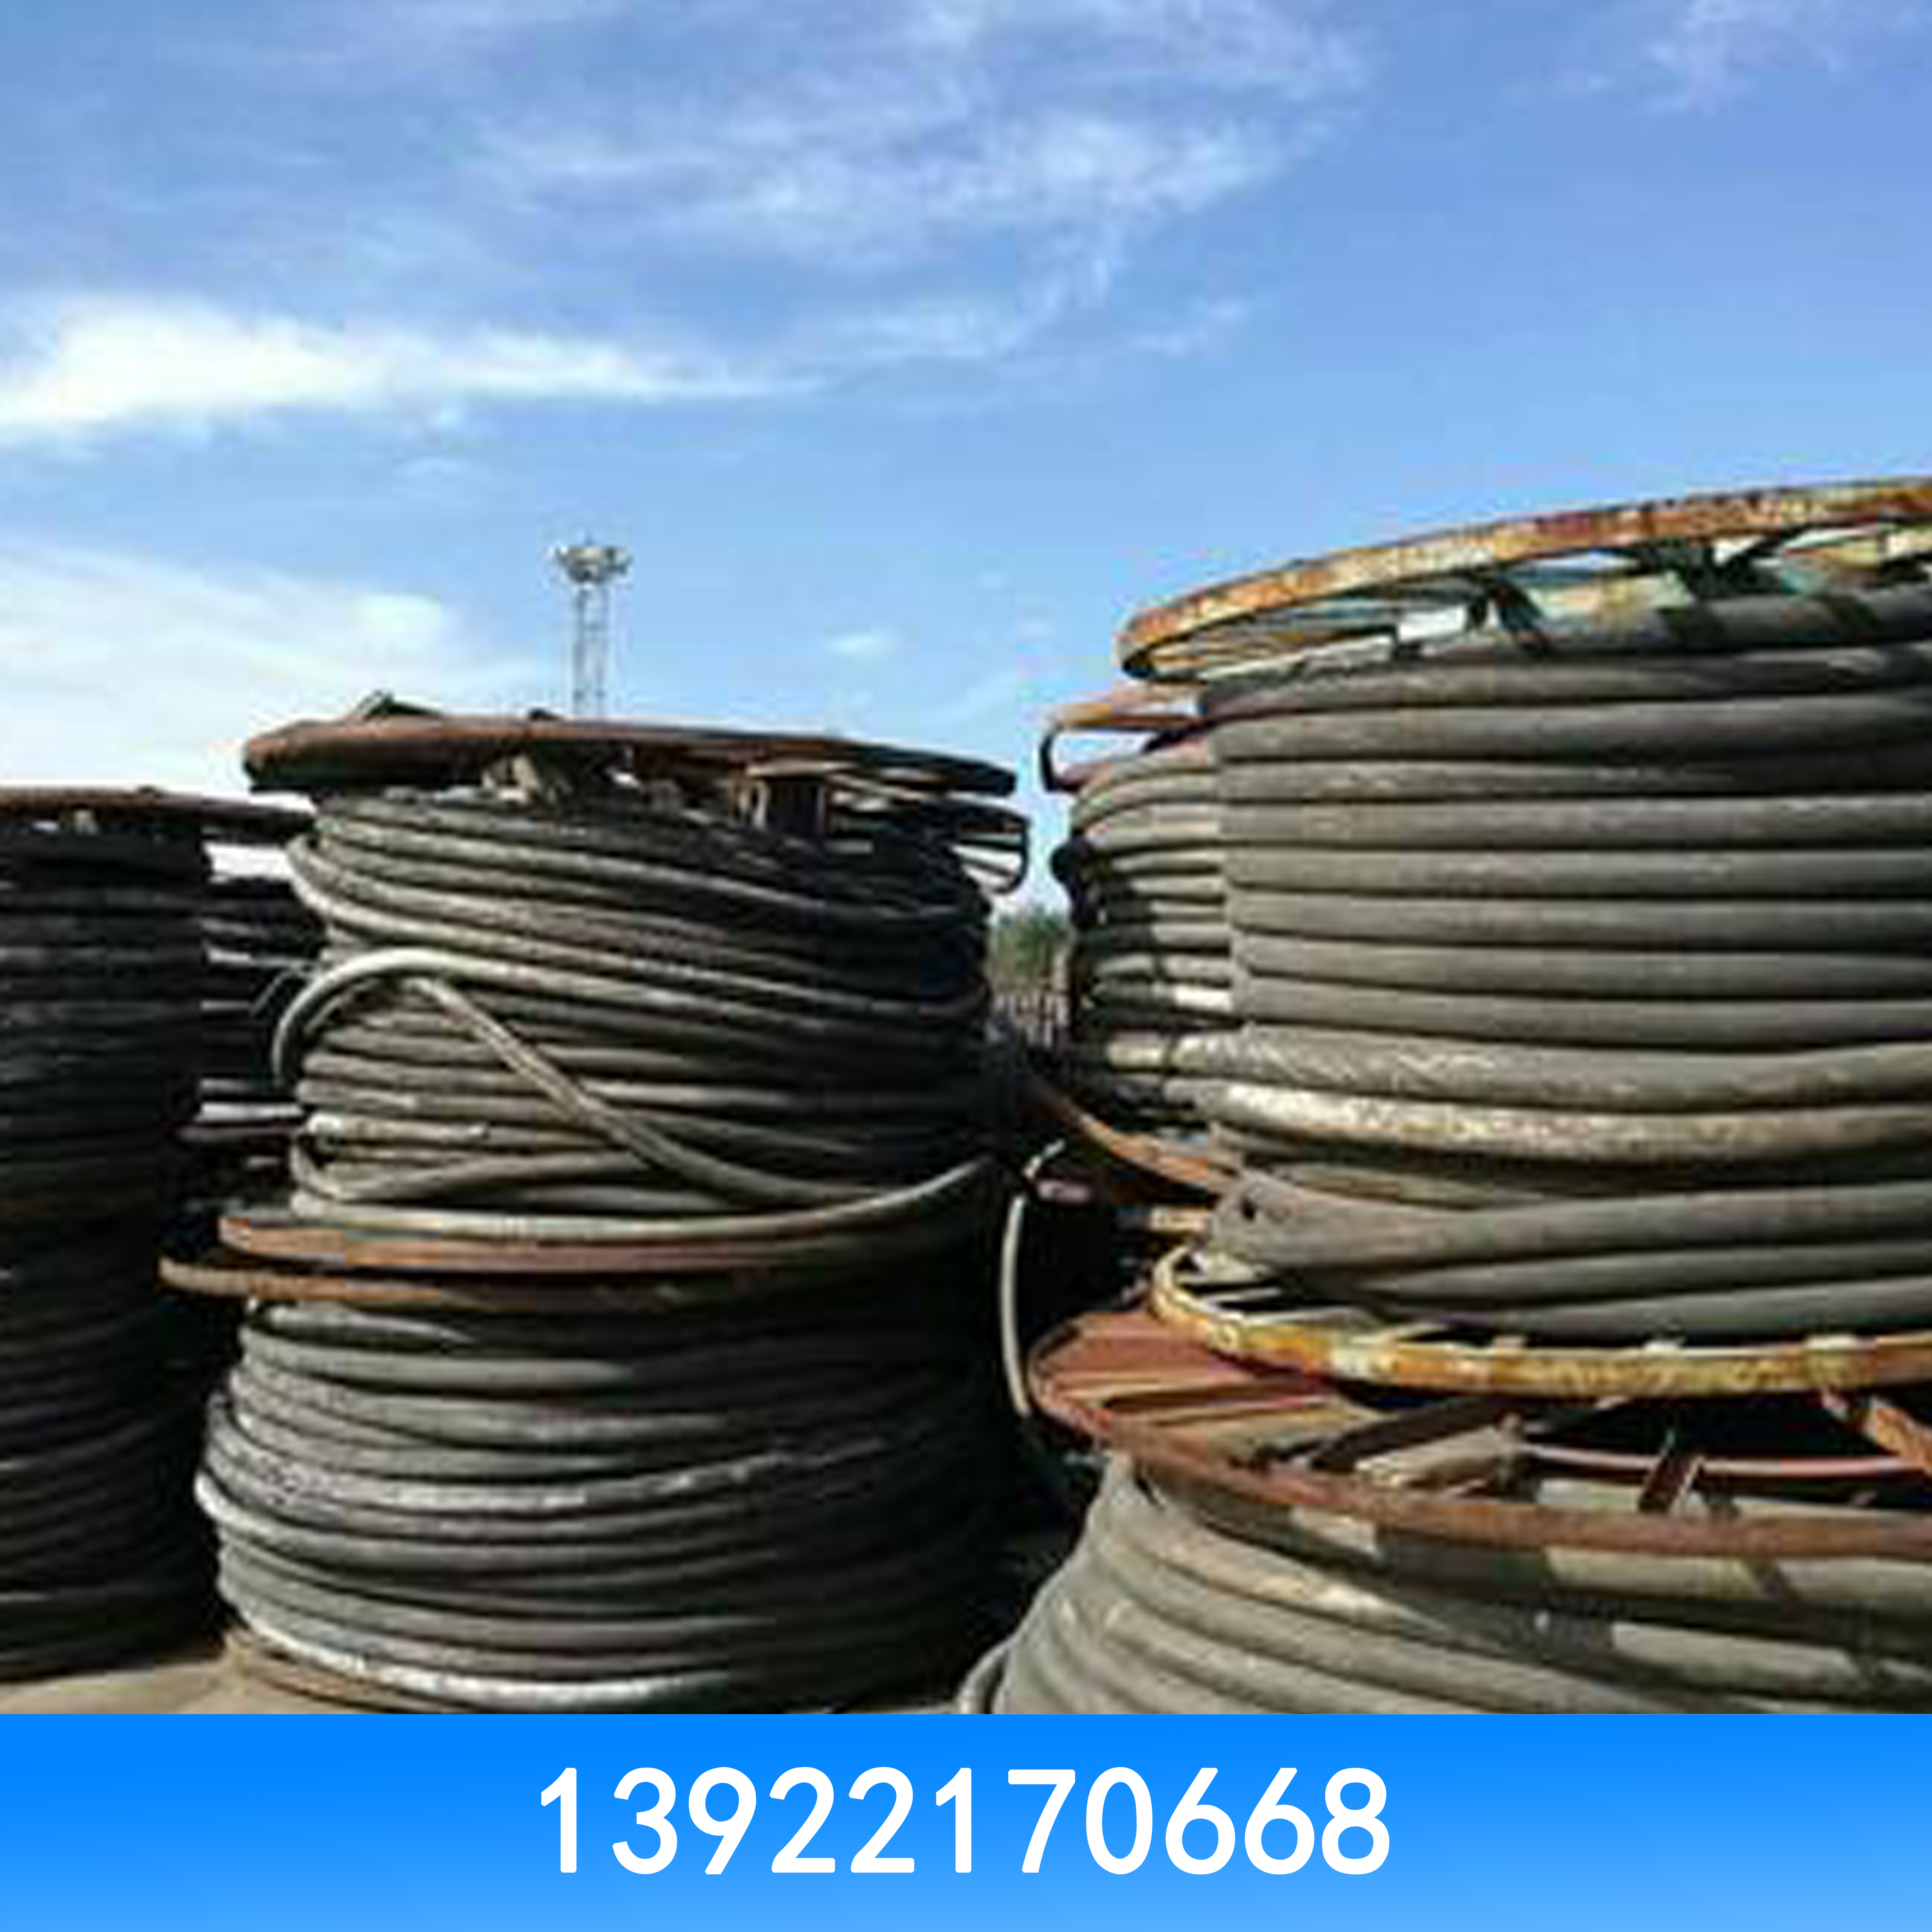 高价回收电线电缆 高价回收二手电线电缆 二手电线电缆回收